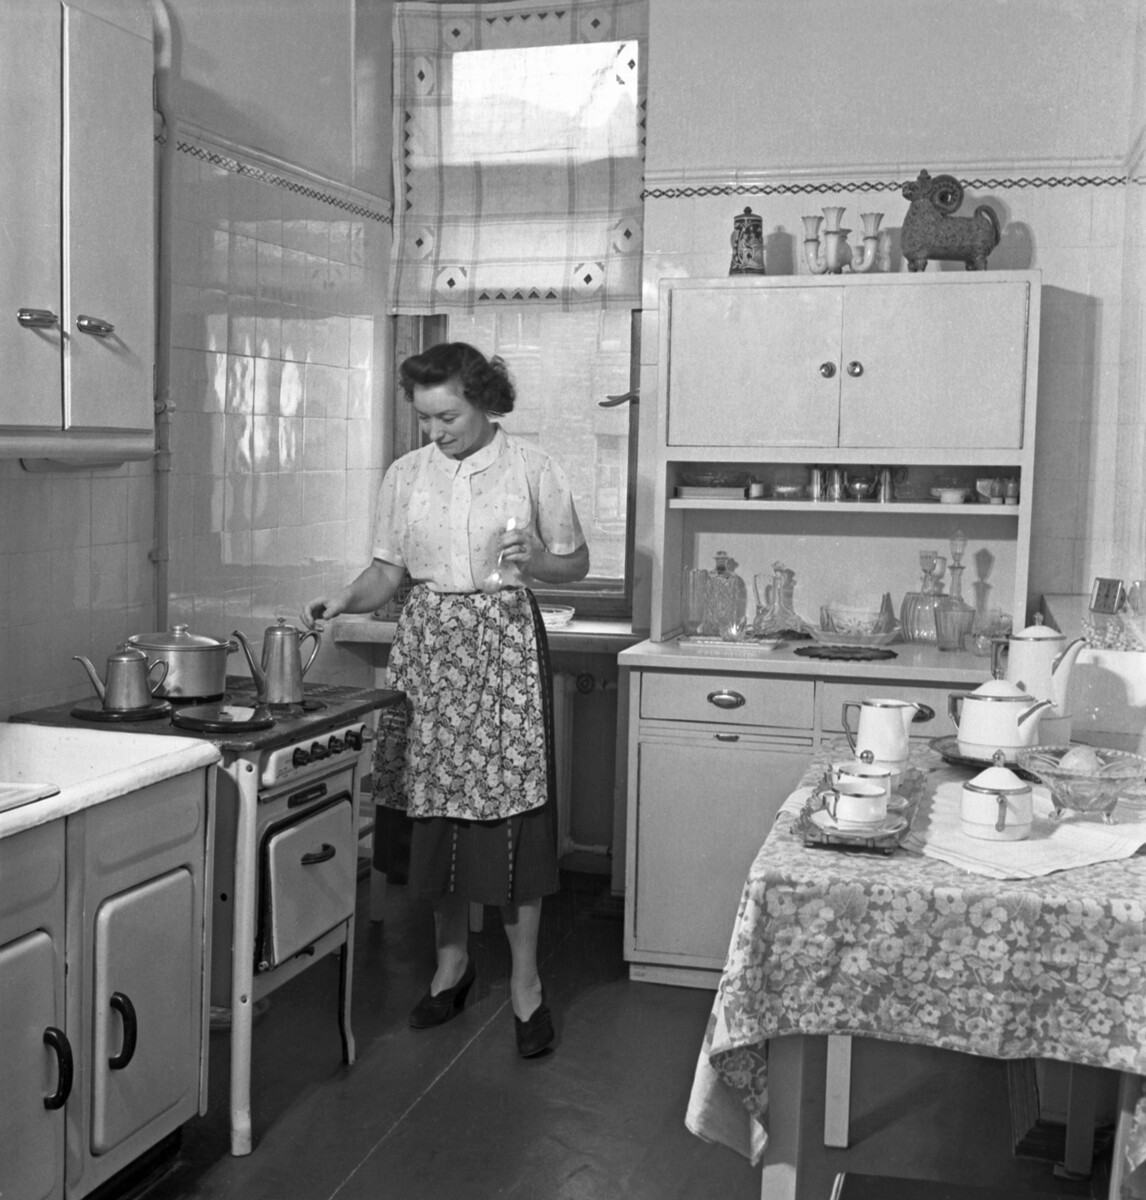 En préparant le petit-déjeuner, 1952